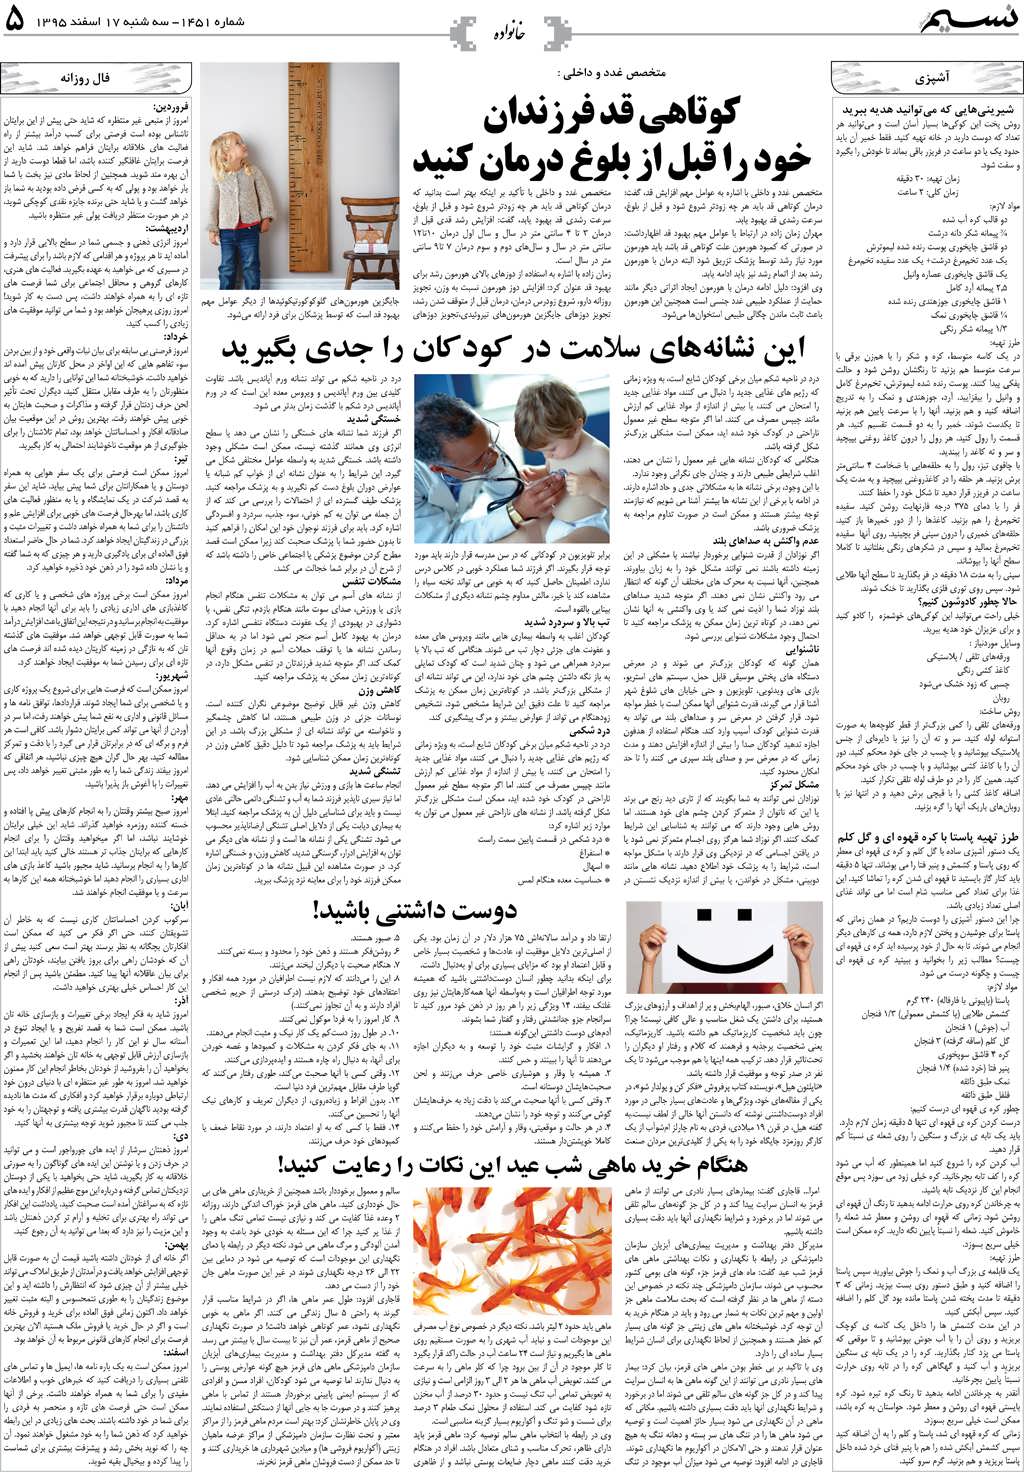 صفحه خانواده روزنامه نسیم شماره 1451